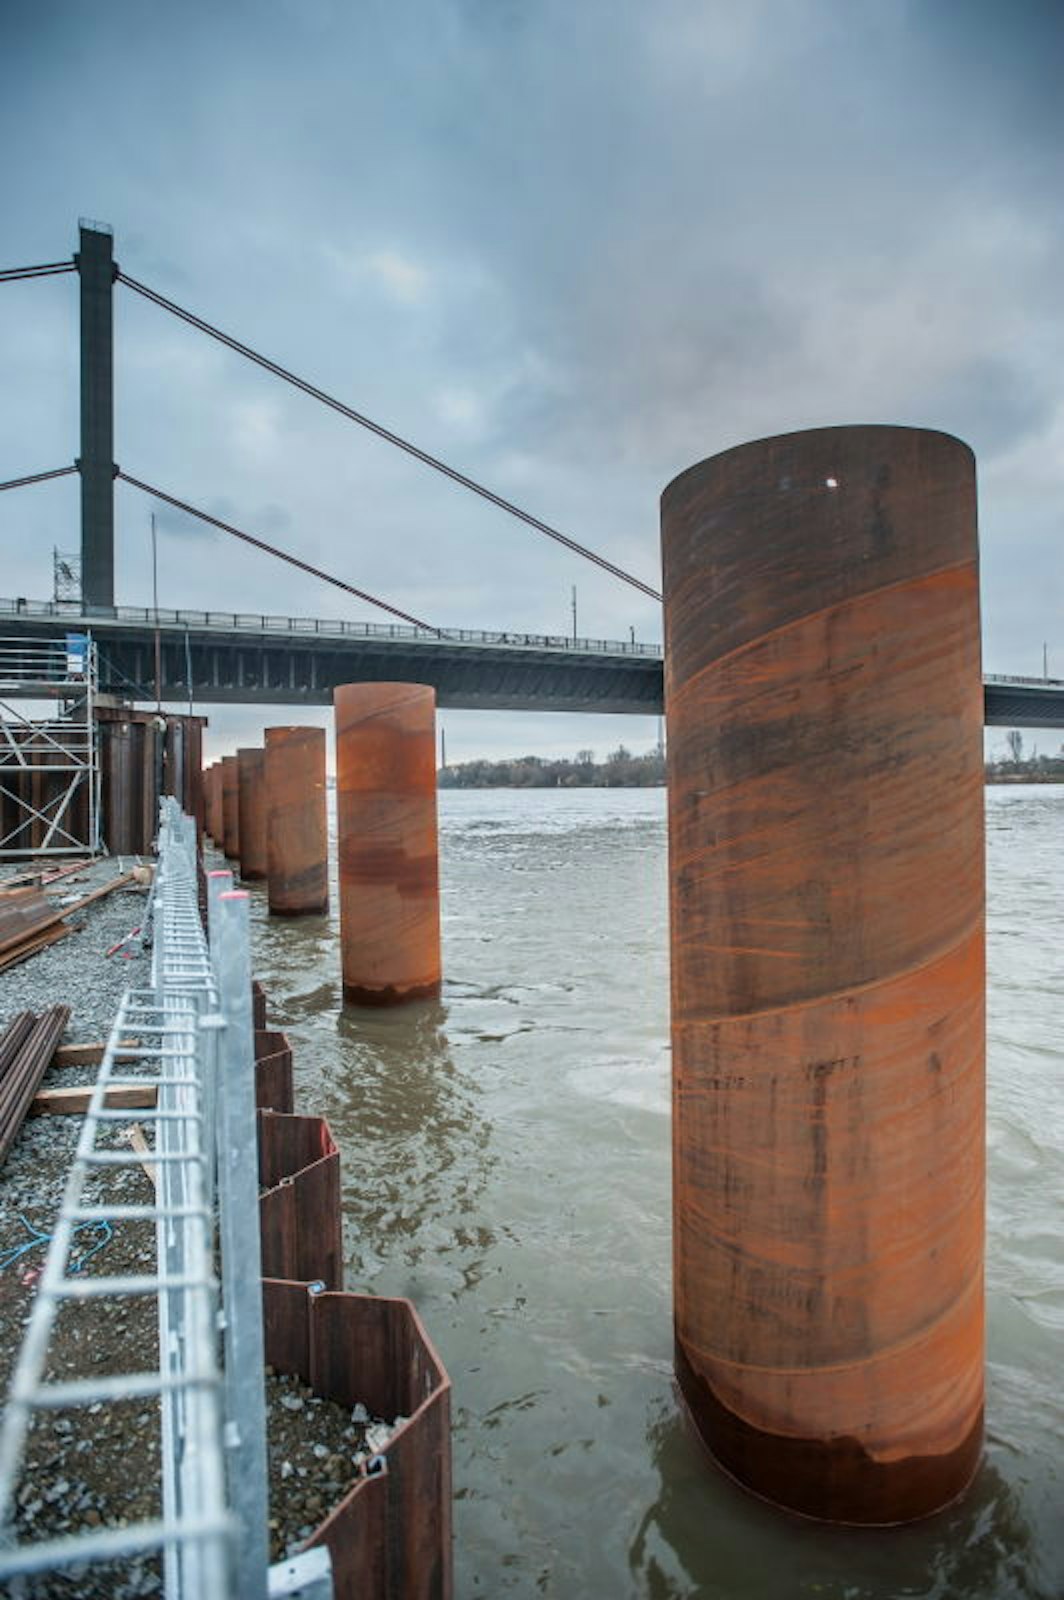 An beiden Ufern des Rheins wurden Anlegestellen für Schiffe hergestellt – die Bauteile für die neue Brücke werden auf dem Wasserweg angeliefert. 